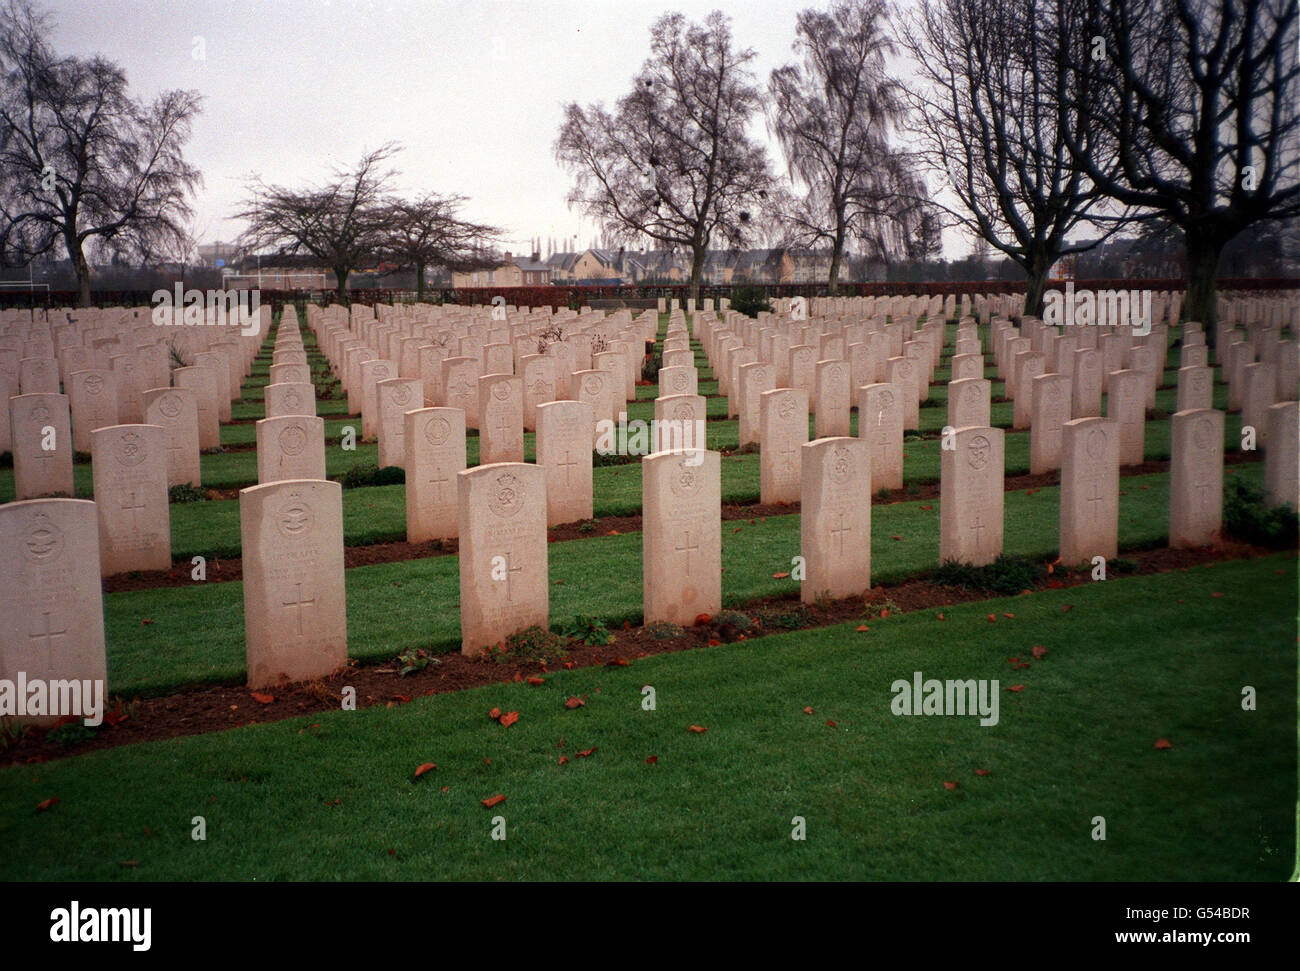 TOMBE DI GUERRA BRITANNICHE: Bayeux, liberato il 7 giugno 1944, ha il più grande cimitero britannico in Normandia con circa 4,663 tombe britanniche e altri 1,837 nomi inscritti sul suo memoriale. Il 6 giugno la Regina parteciperà ad un servizio con i veterani britannici della seconda Guerra Mondiale. 10/10/2000 i giardinieri britannici che tendono le tombe di guerra in tutta Europa hanno annunciato che sono pronti ad iniziare un'azione legale nel tentativo di invertire i tagli salariali in oscillazione. I 77 giardinieri, che sono impiegati la Commissione delle tombe di guerra del Commonwealth e membri dell'Unione dei Trasporti e dei lavoratori generali, si occupano dei giardini e delle tombe di guerra Foto Stock